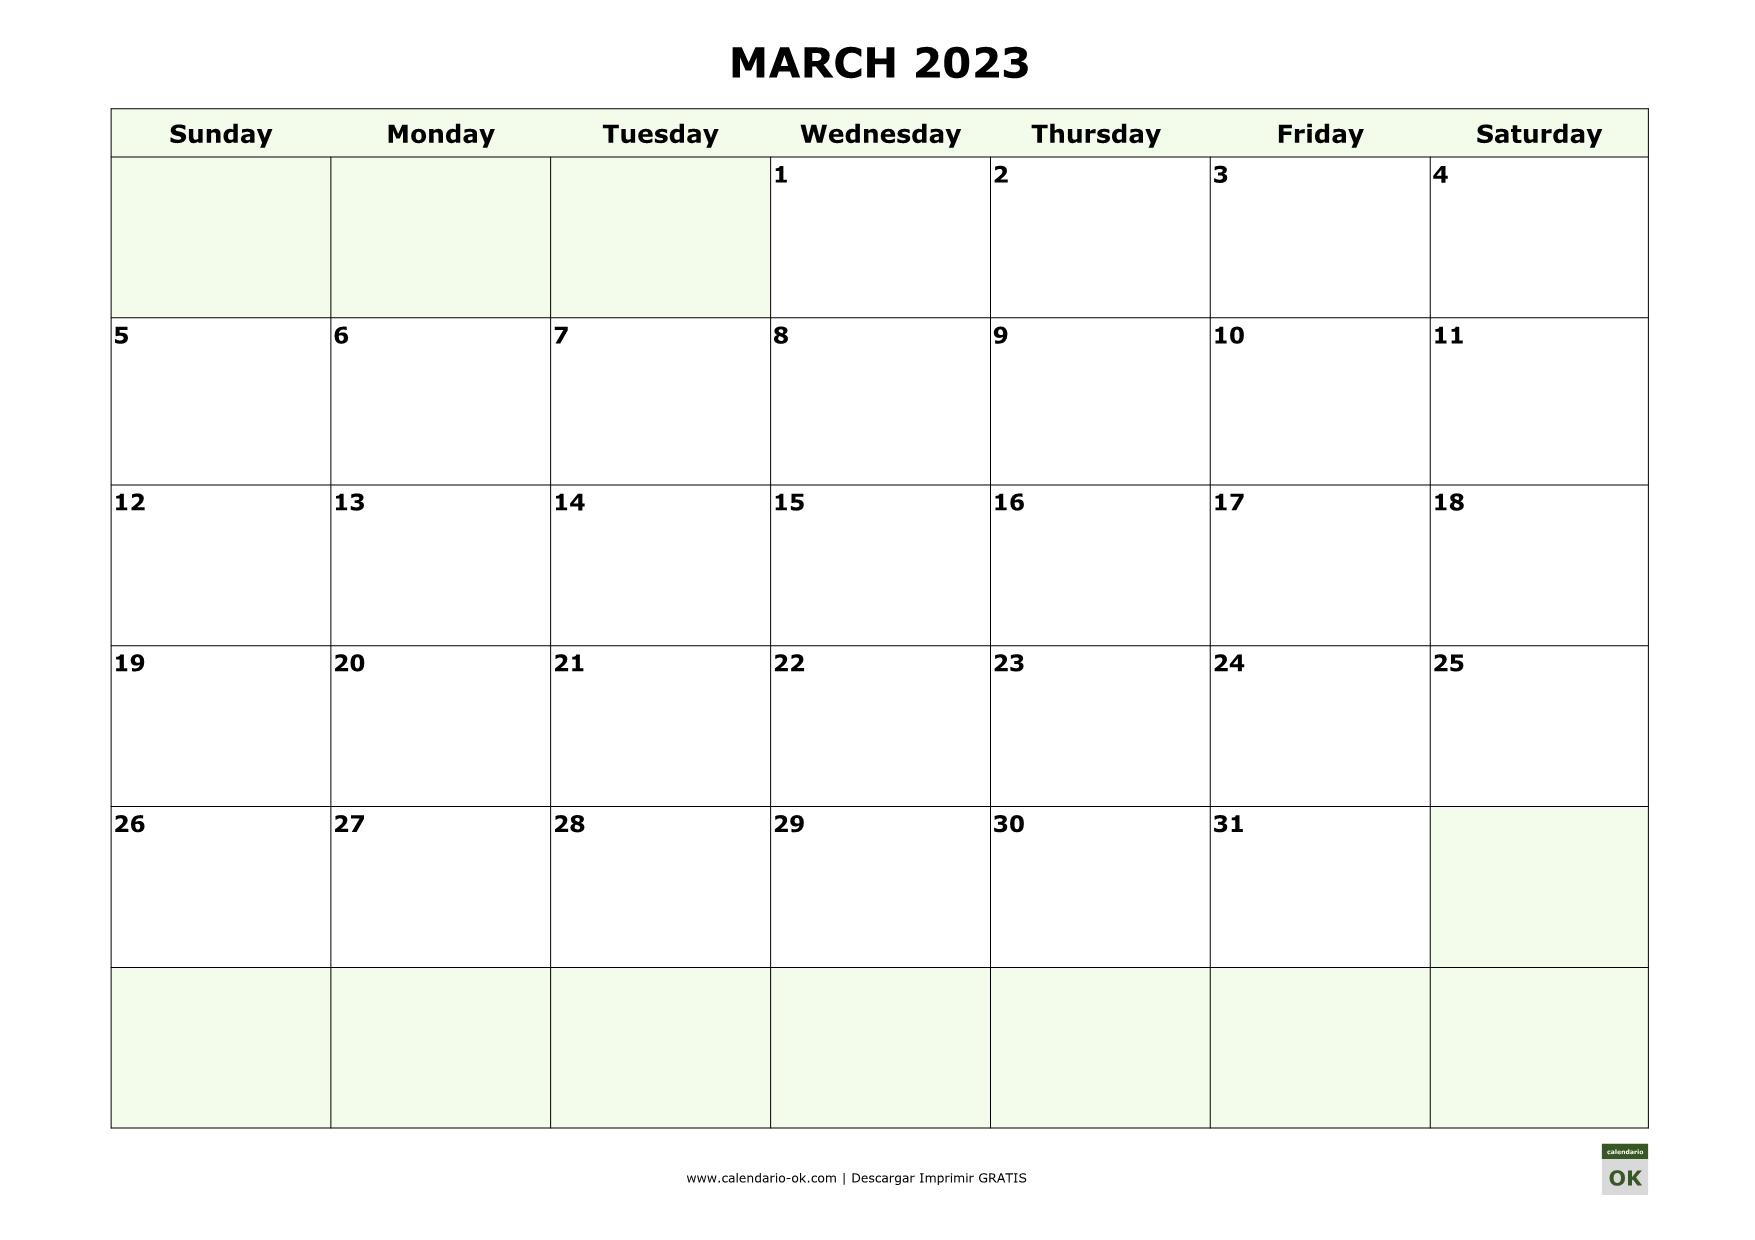 Mes De Marzo 2023 ▷ Plantilla Calendario 【MARZO 2023】 para IMPRIMIR PDF